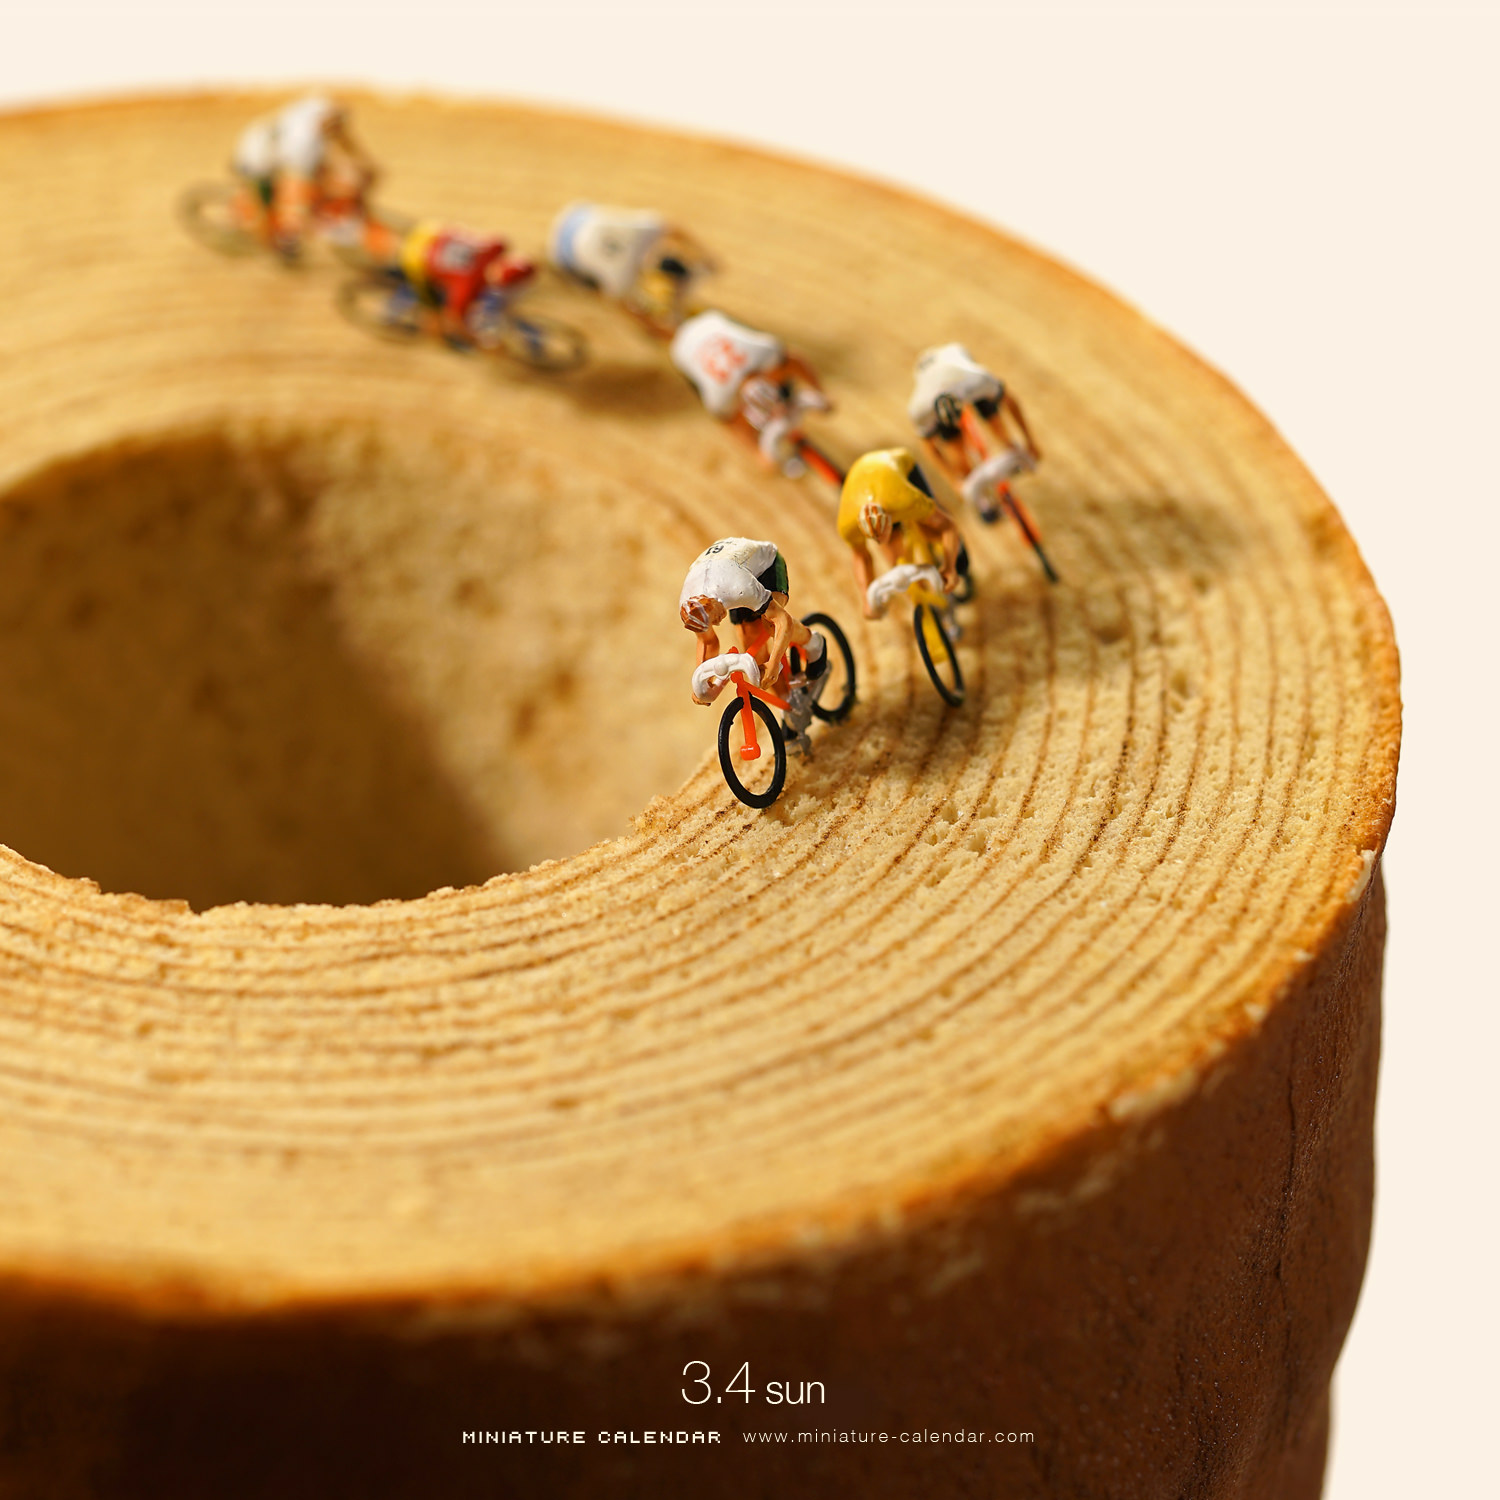 日本艺术家田中达也的微型摄影作品